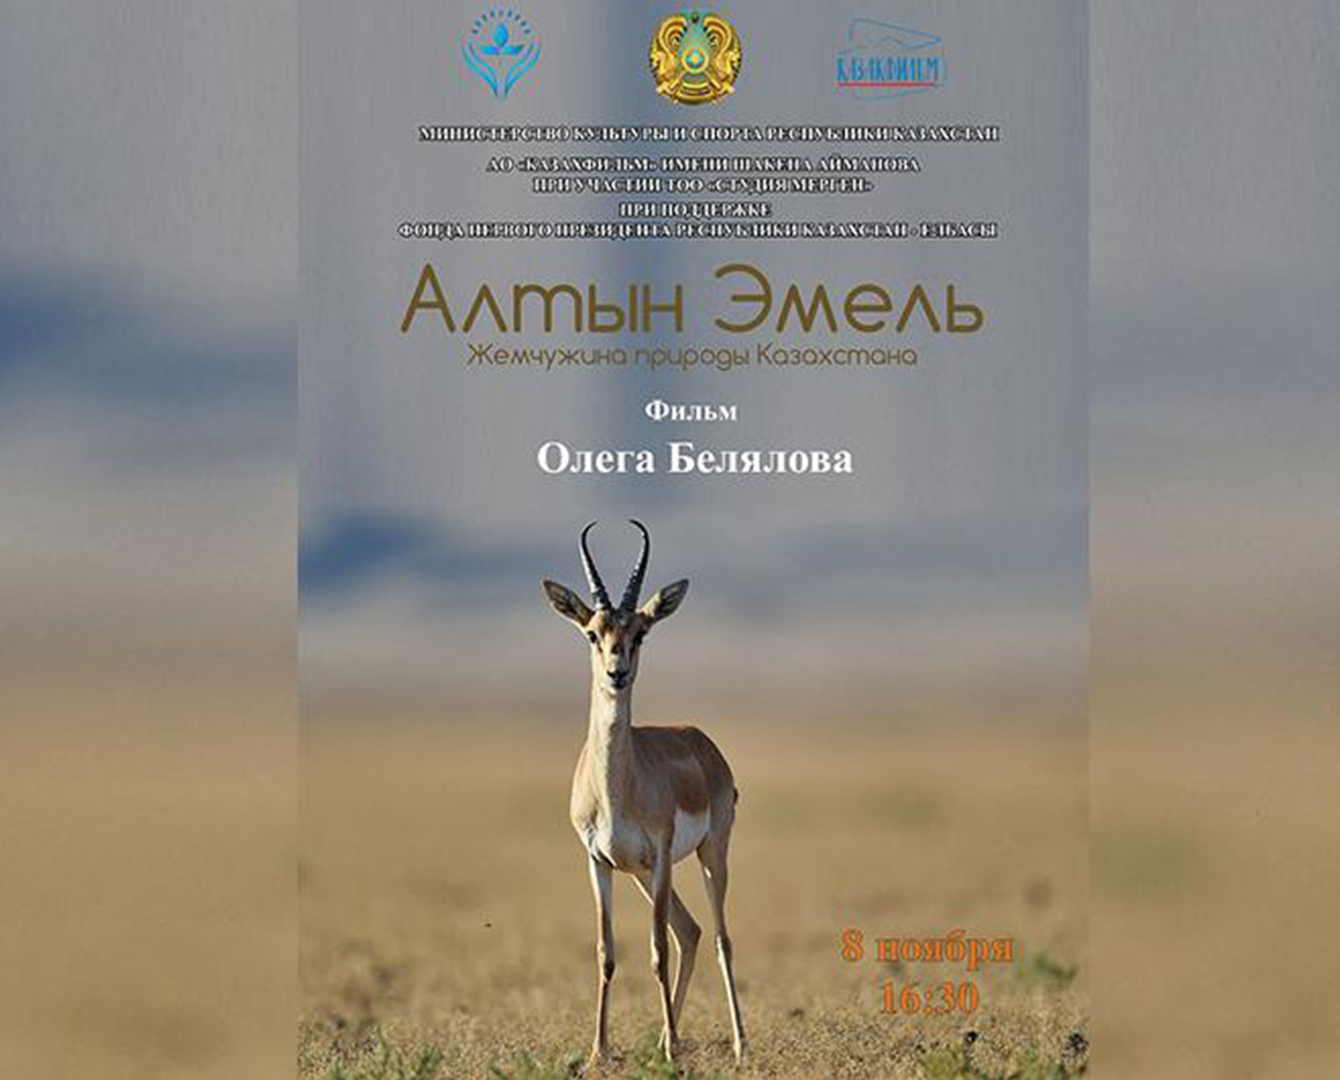 Документальный фильм об Алтын-Эмеле покажут на международном кинофоруме в Кыргызстане